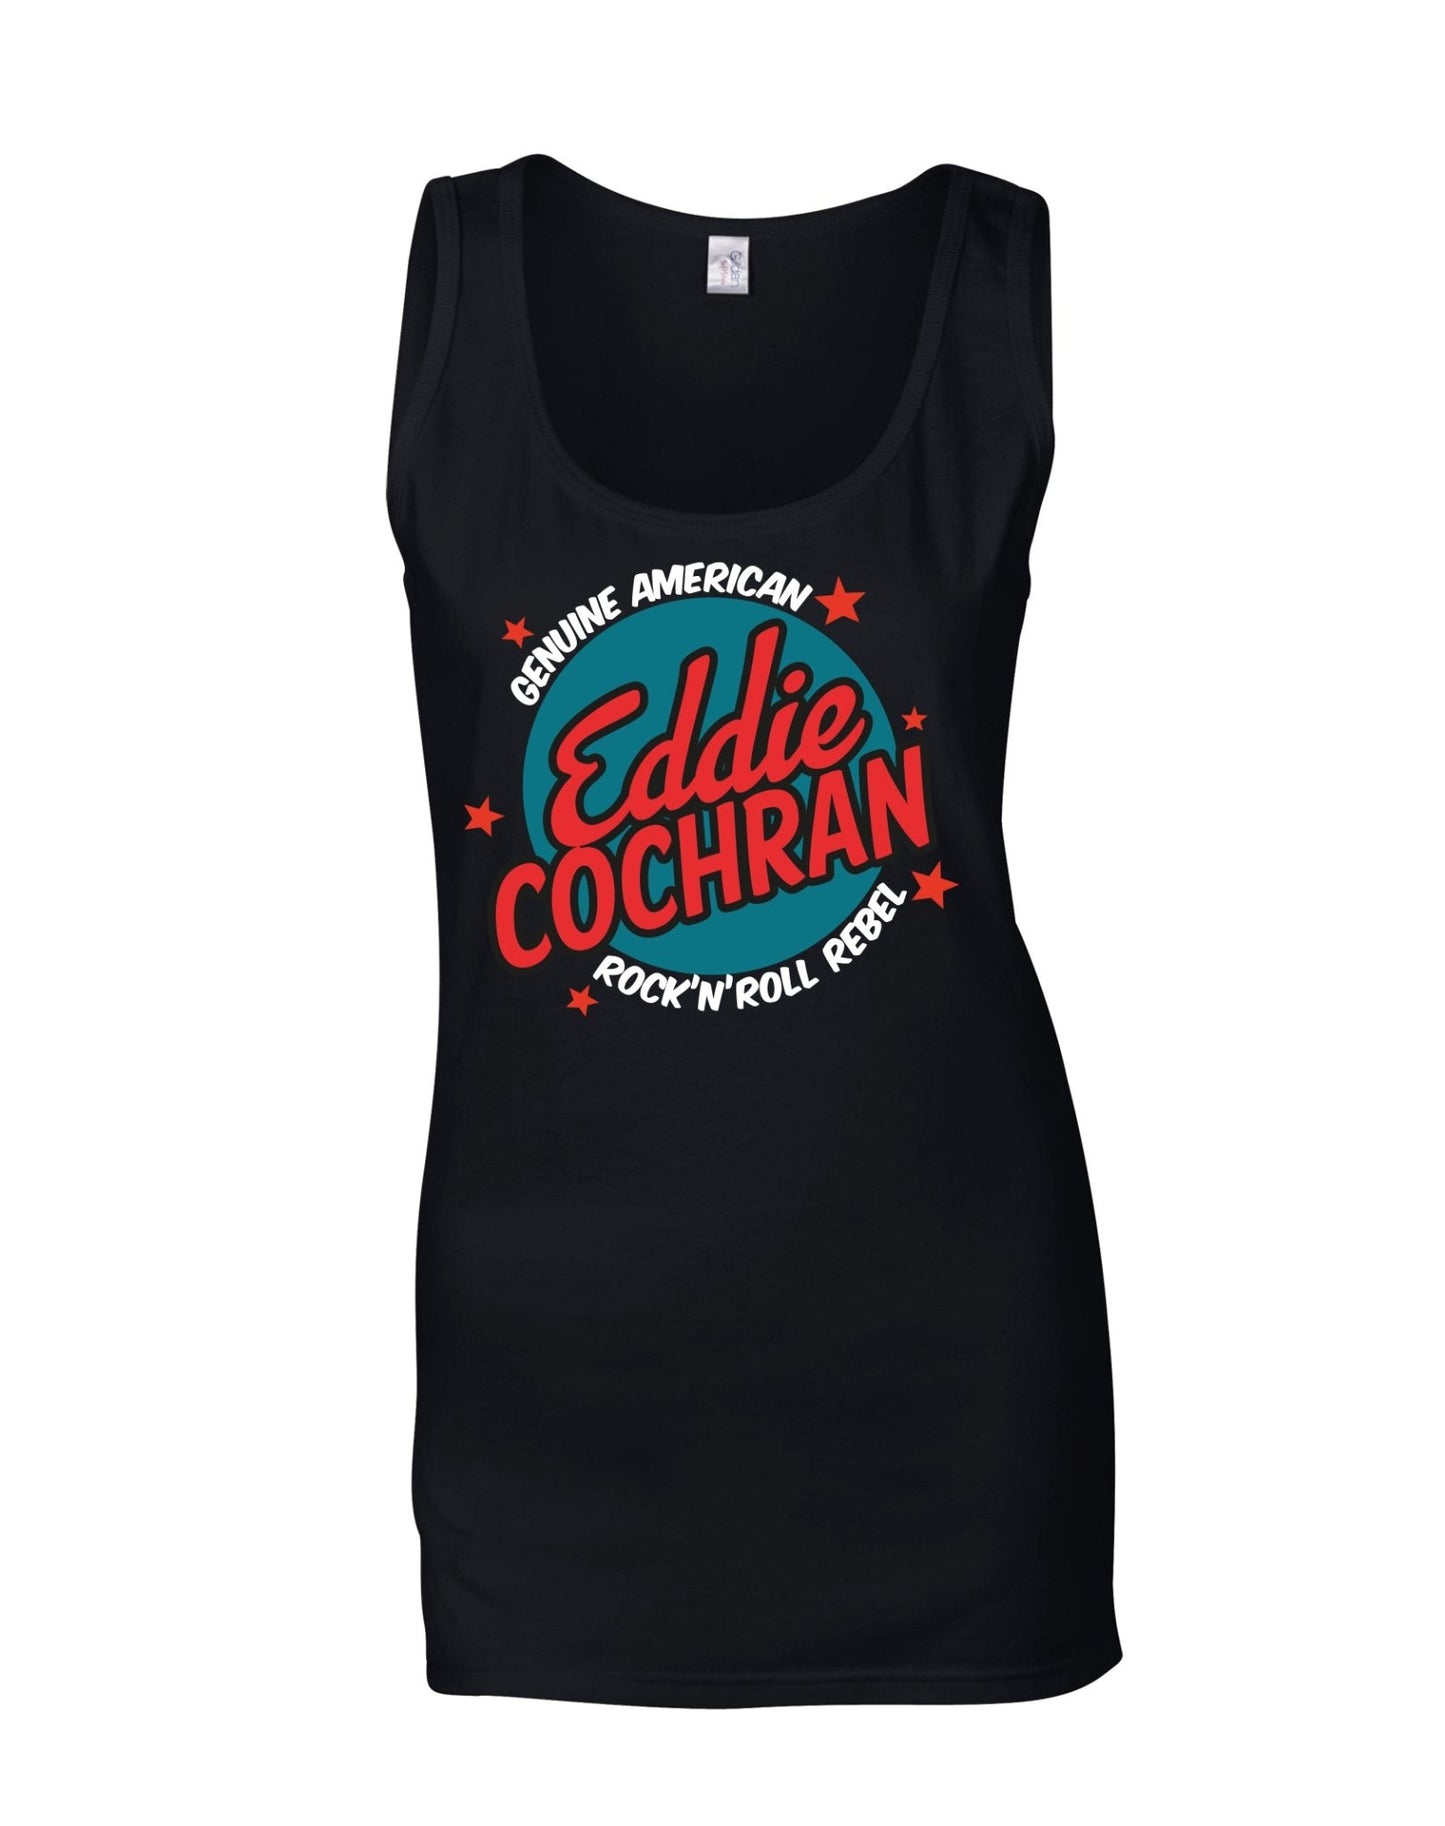 Eddie Cochran - rock'n'roll rebel - ladies fit vest - various colours - Dirty Stop Outs